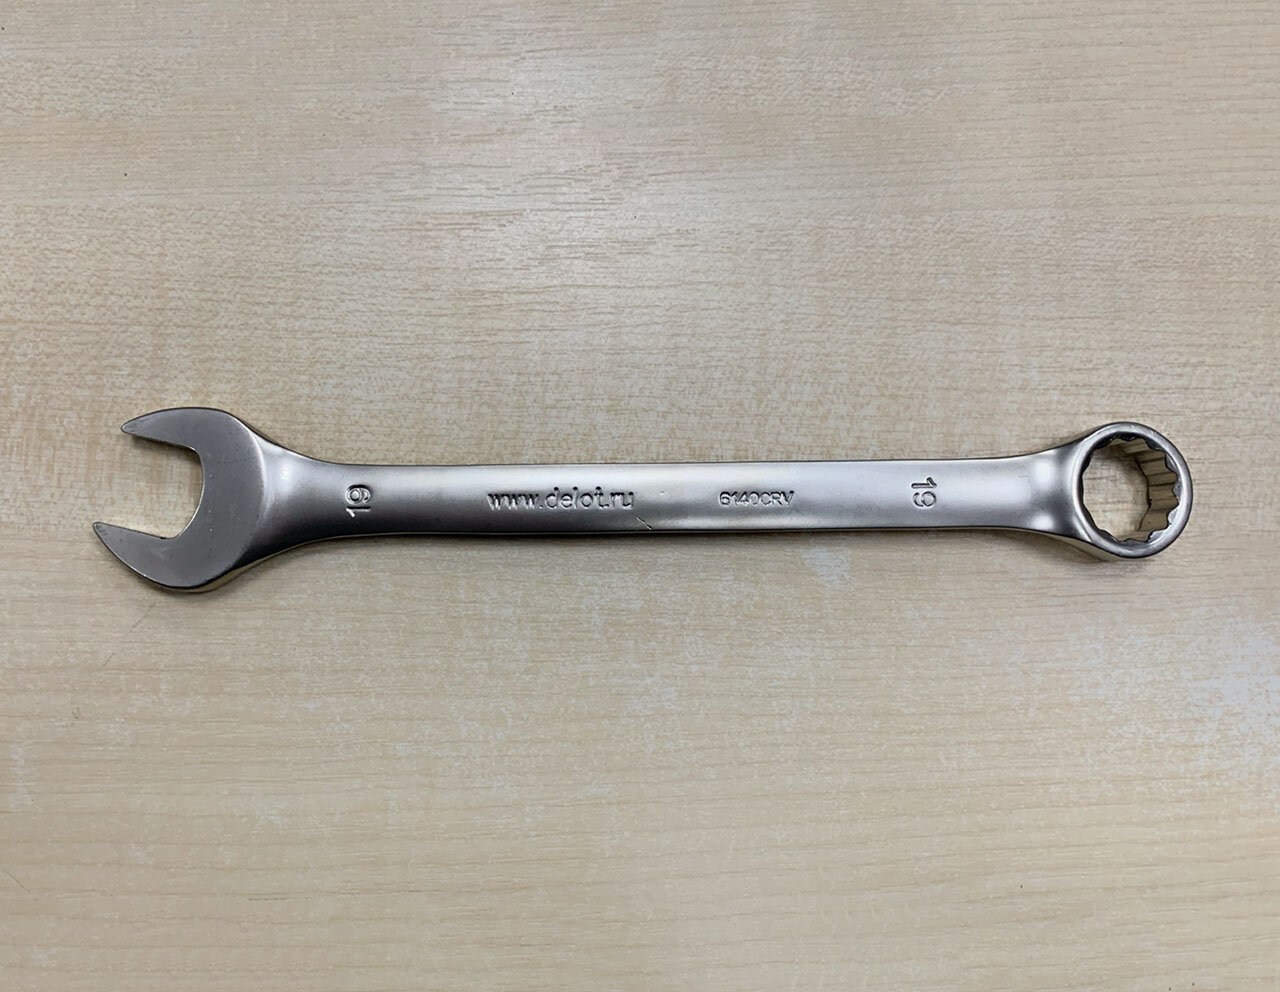 Ключ комбинированный 19 мм